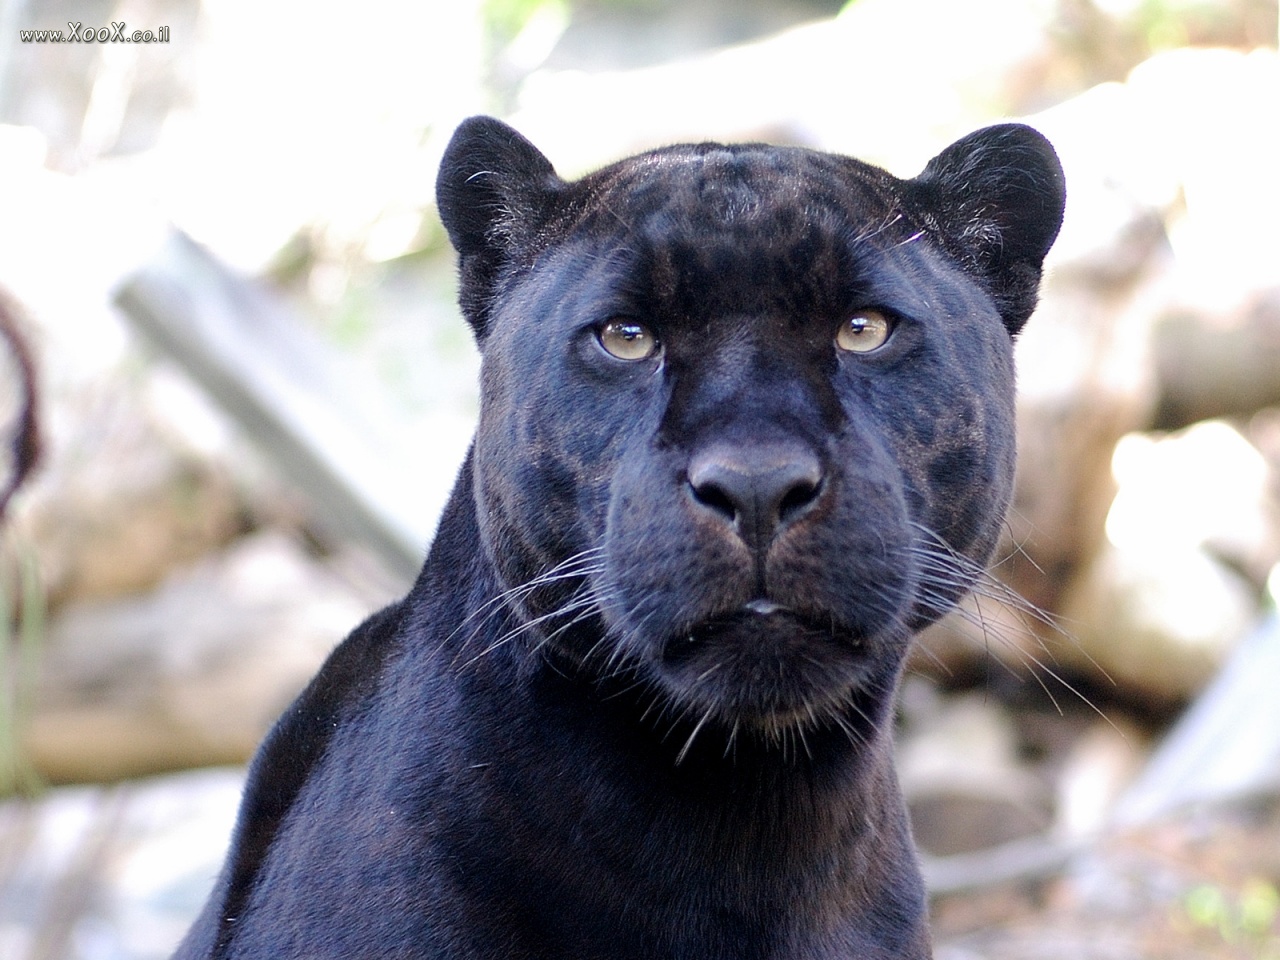 Krafttier schwarzer panther